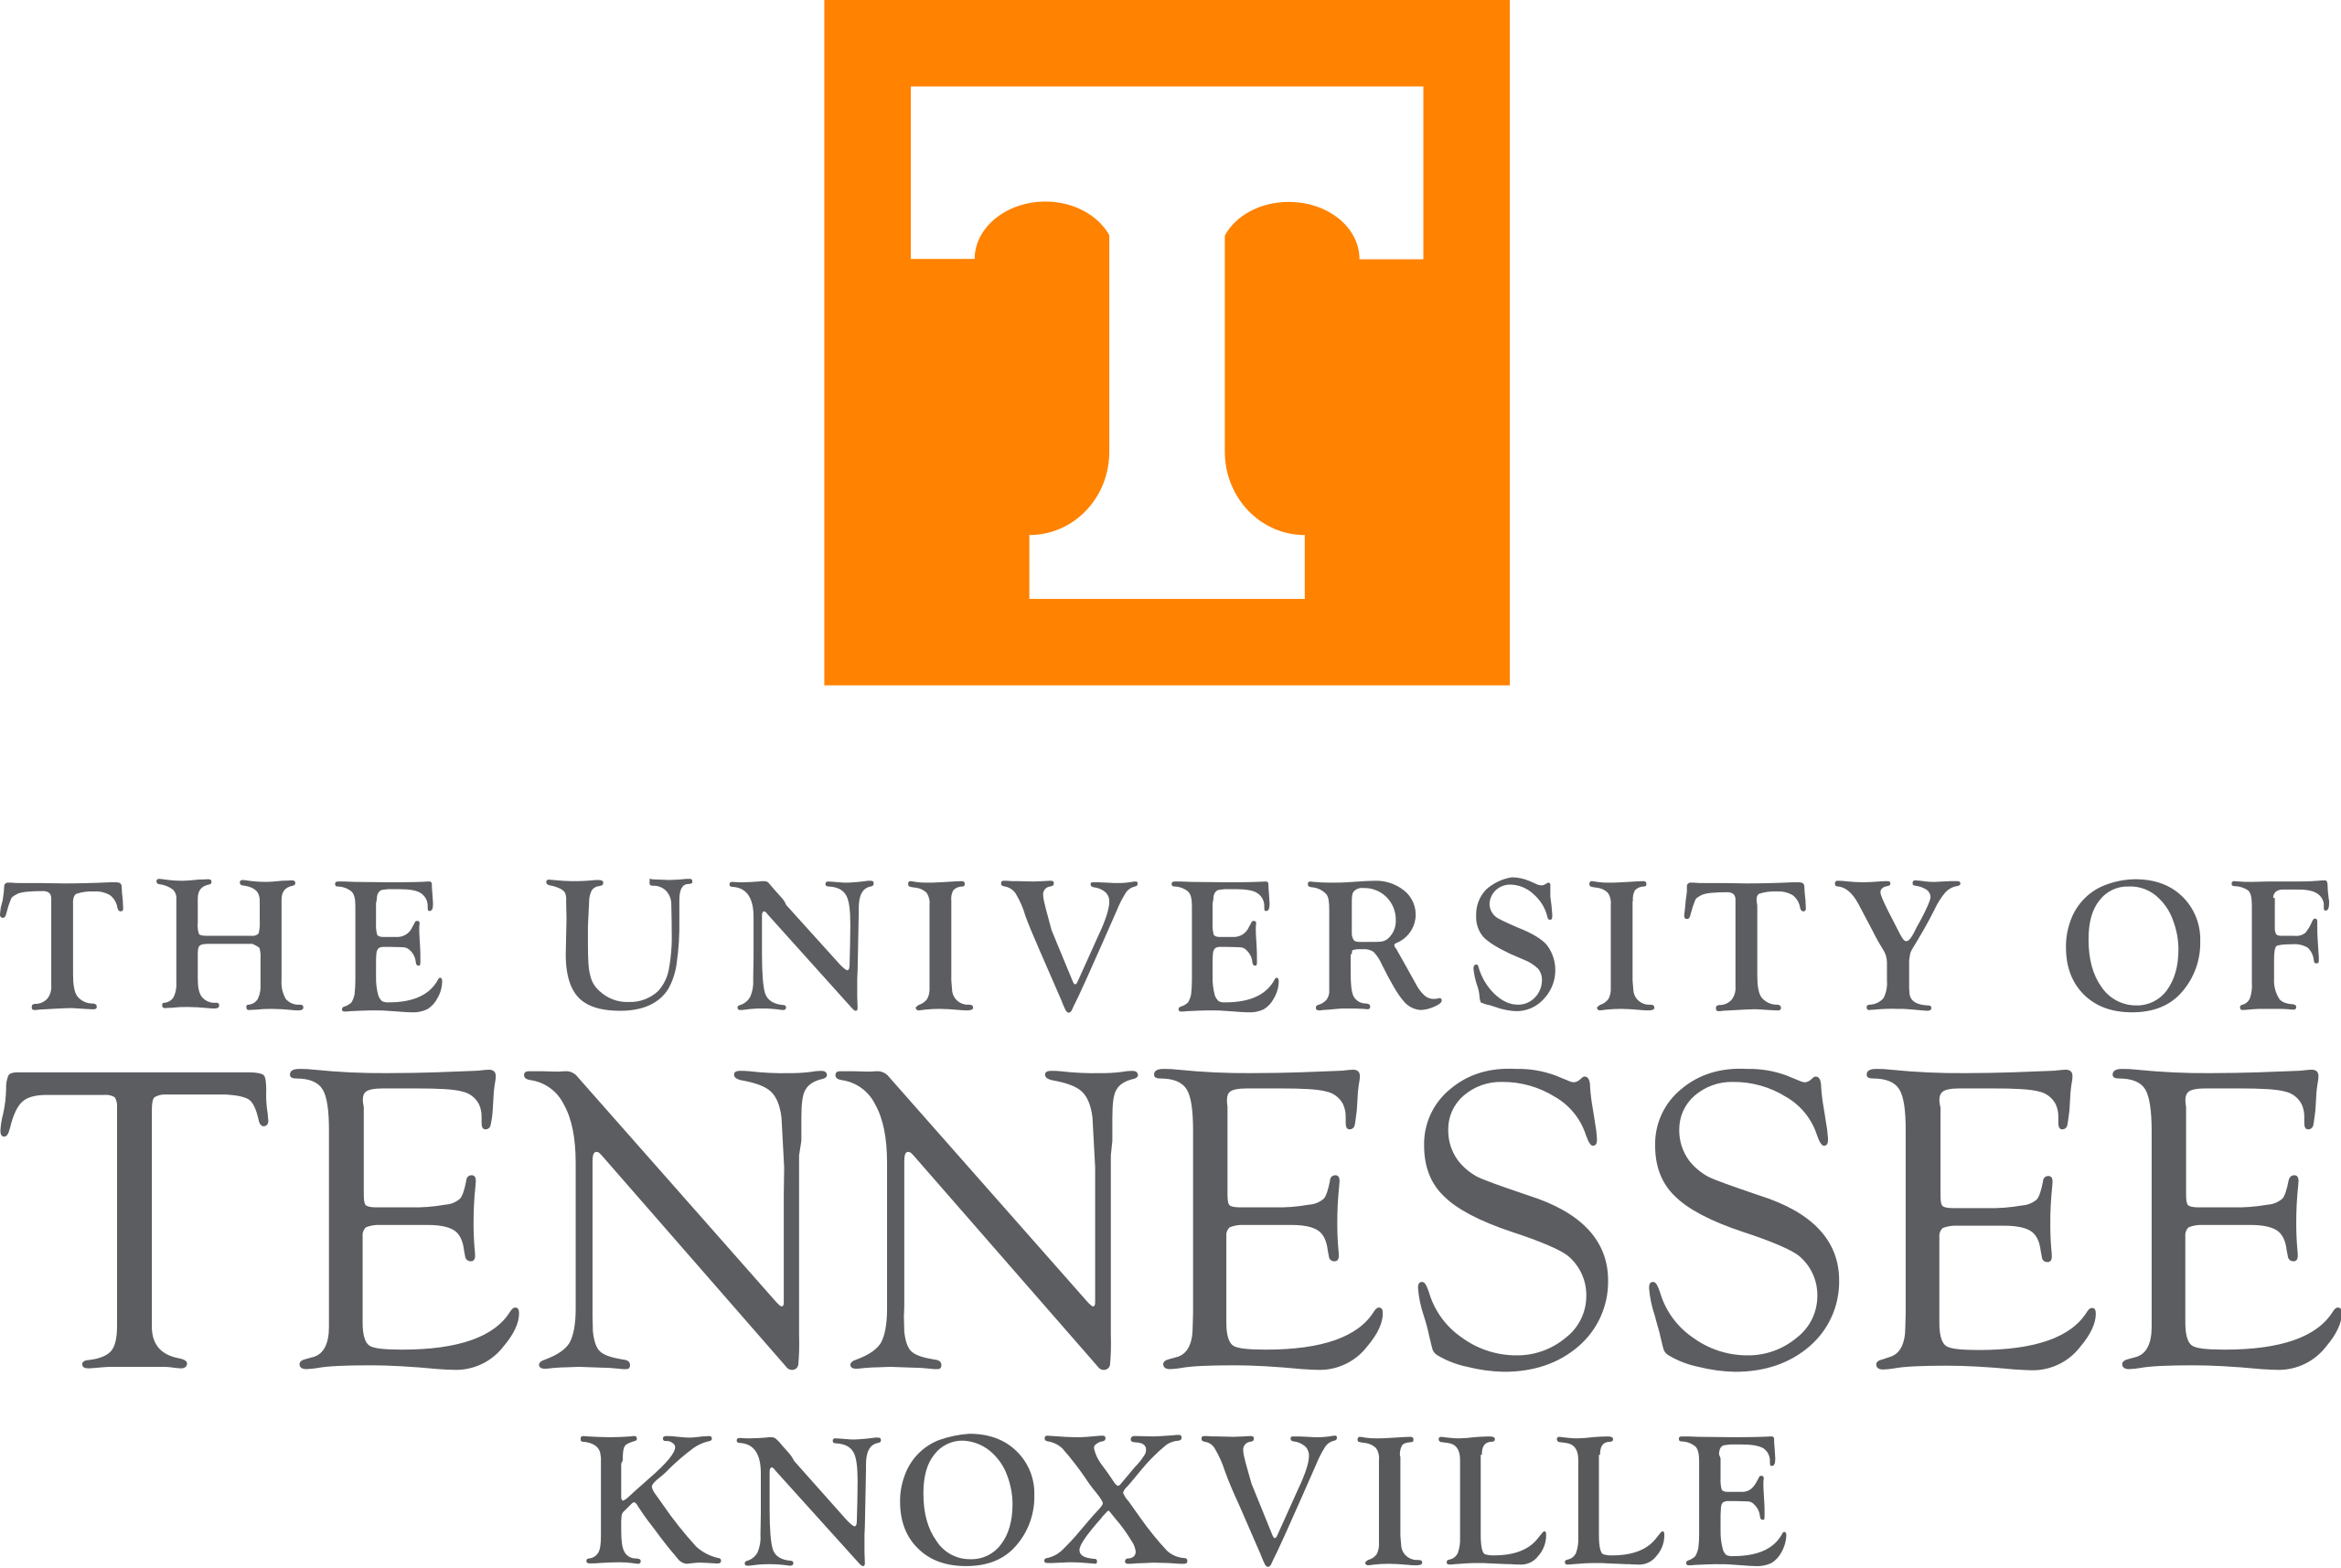 UT_Knoxville_logo_center.svg